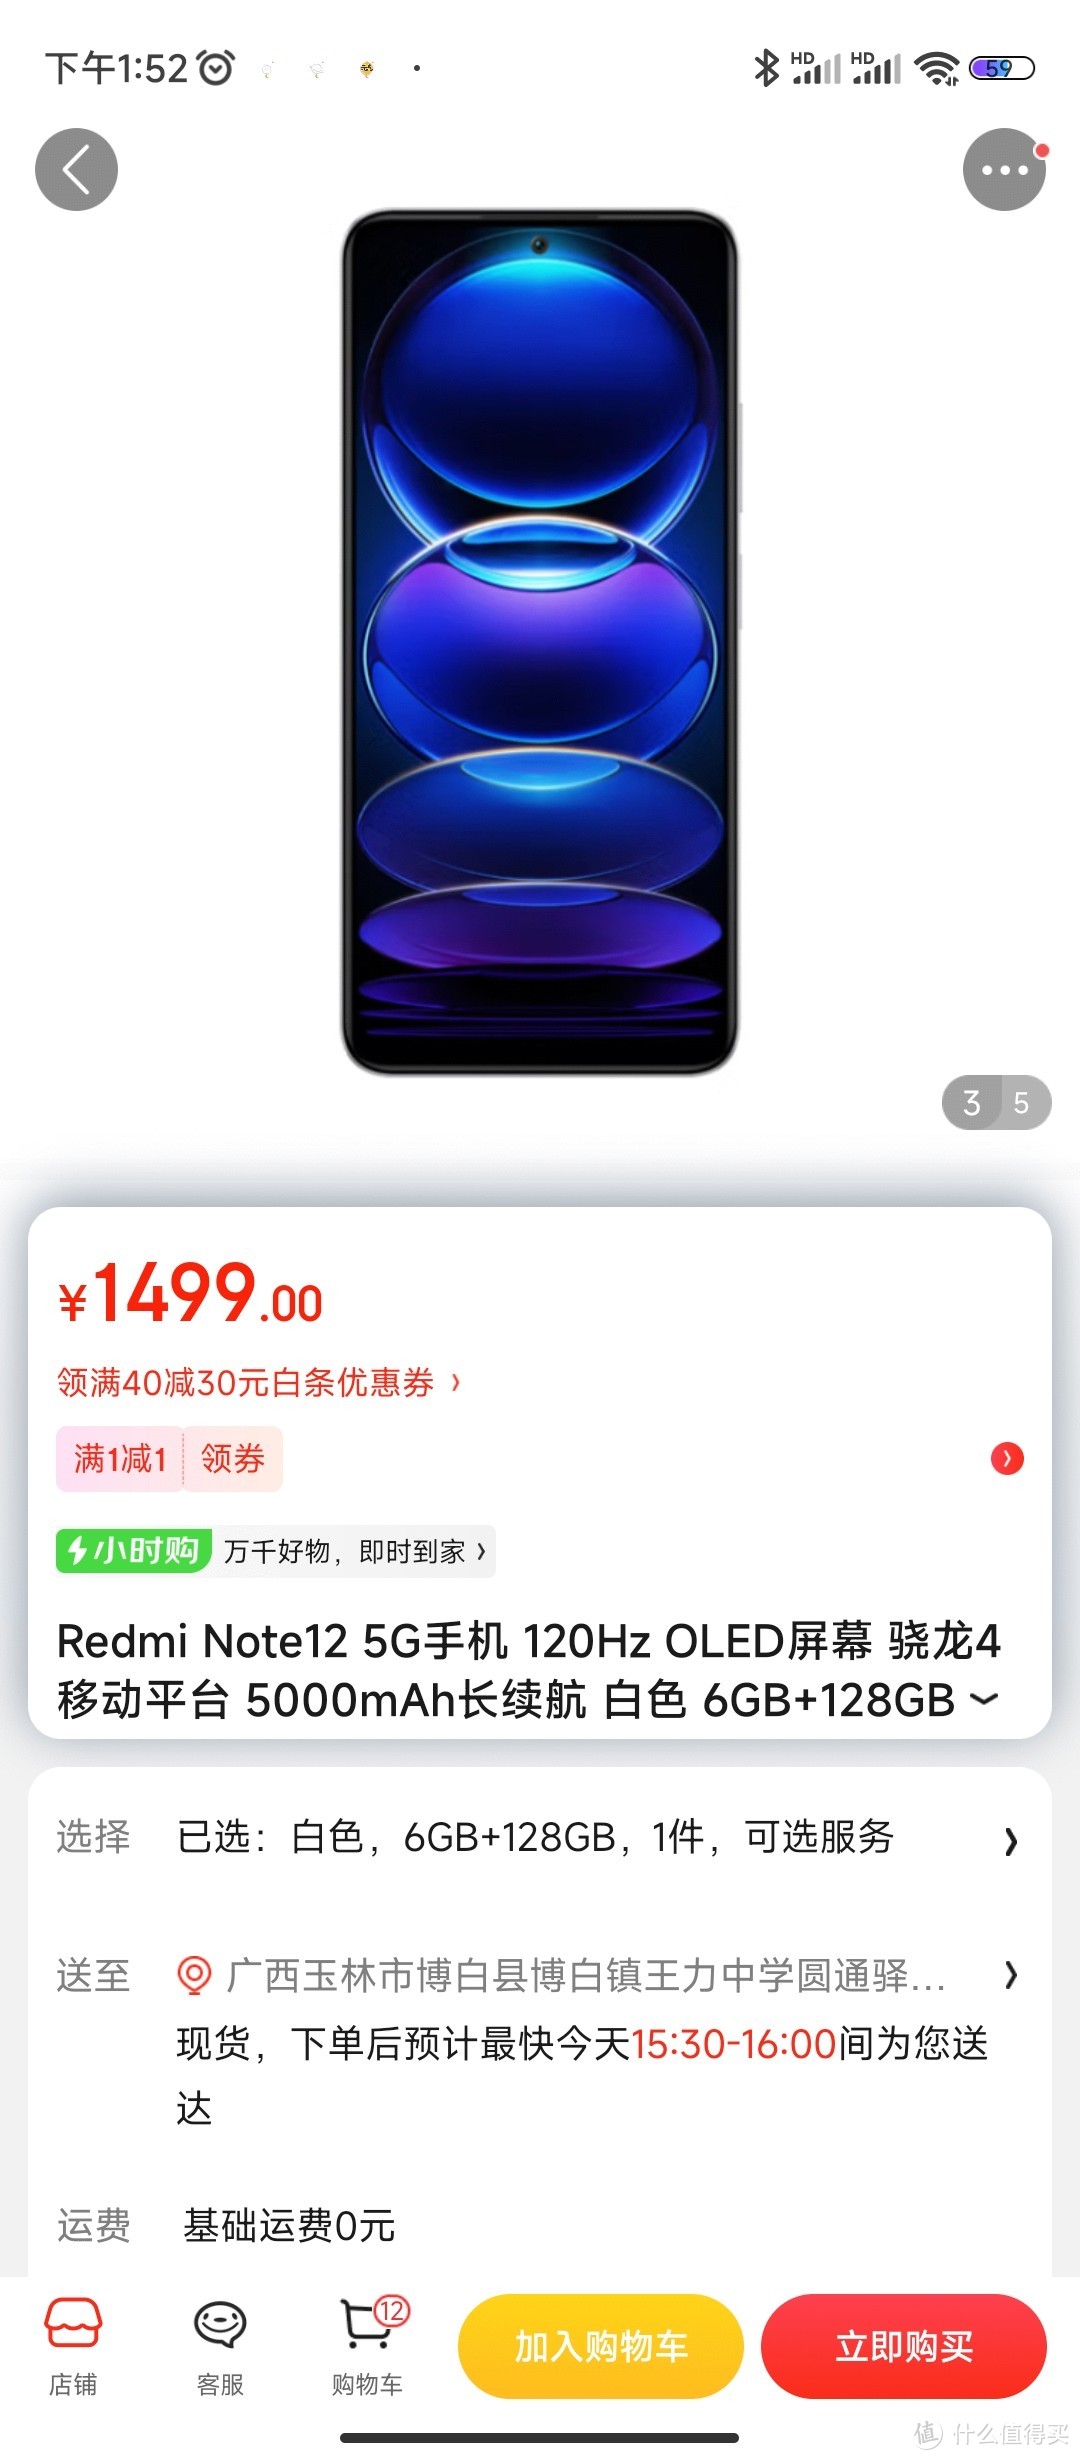 Redmi Note12 5G手机 120Hz OLED屏幕 骁龙4移动平台 5000mAh长续航 白色 6GB+128GB